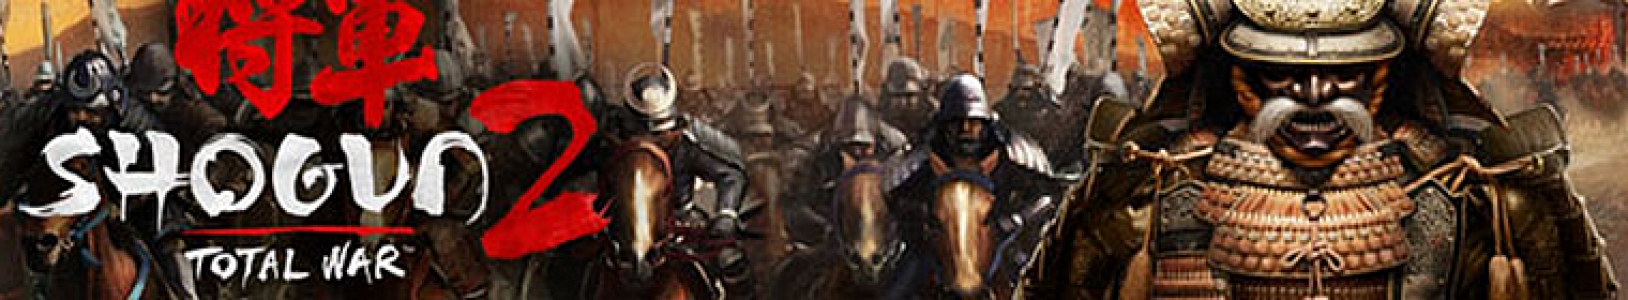 Total War: Shogun 2 banner